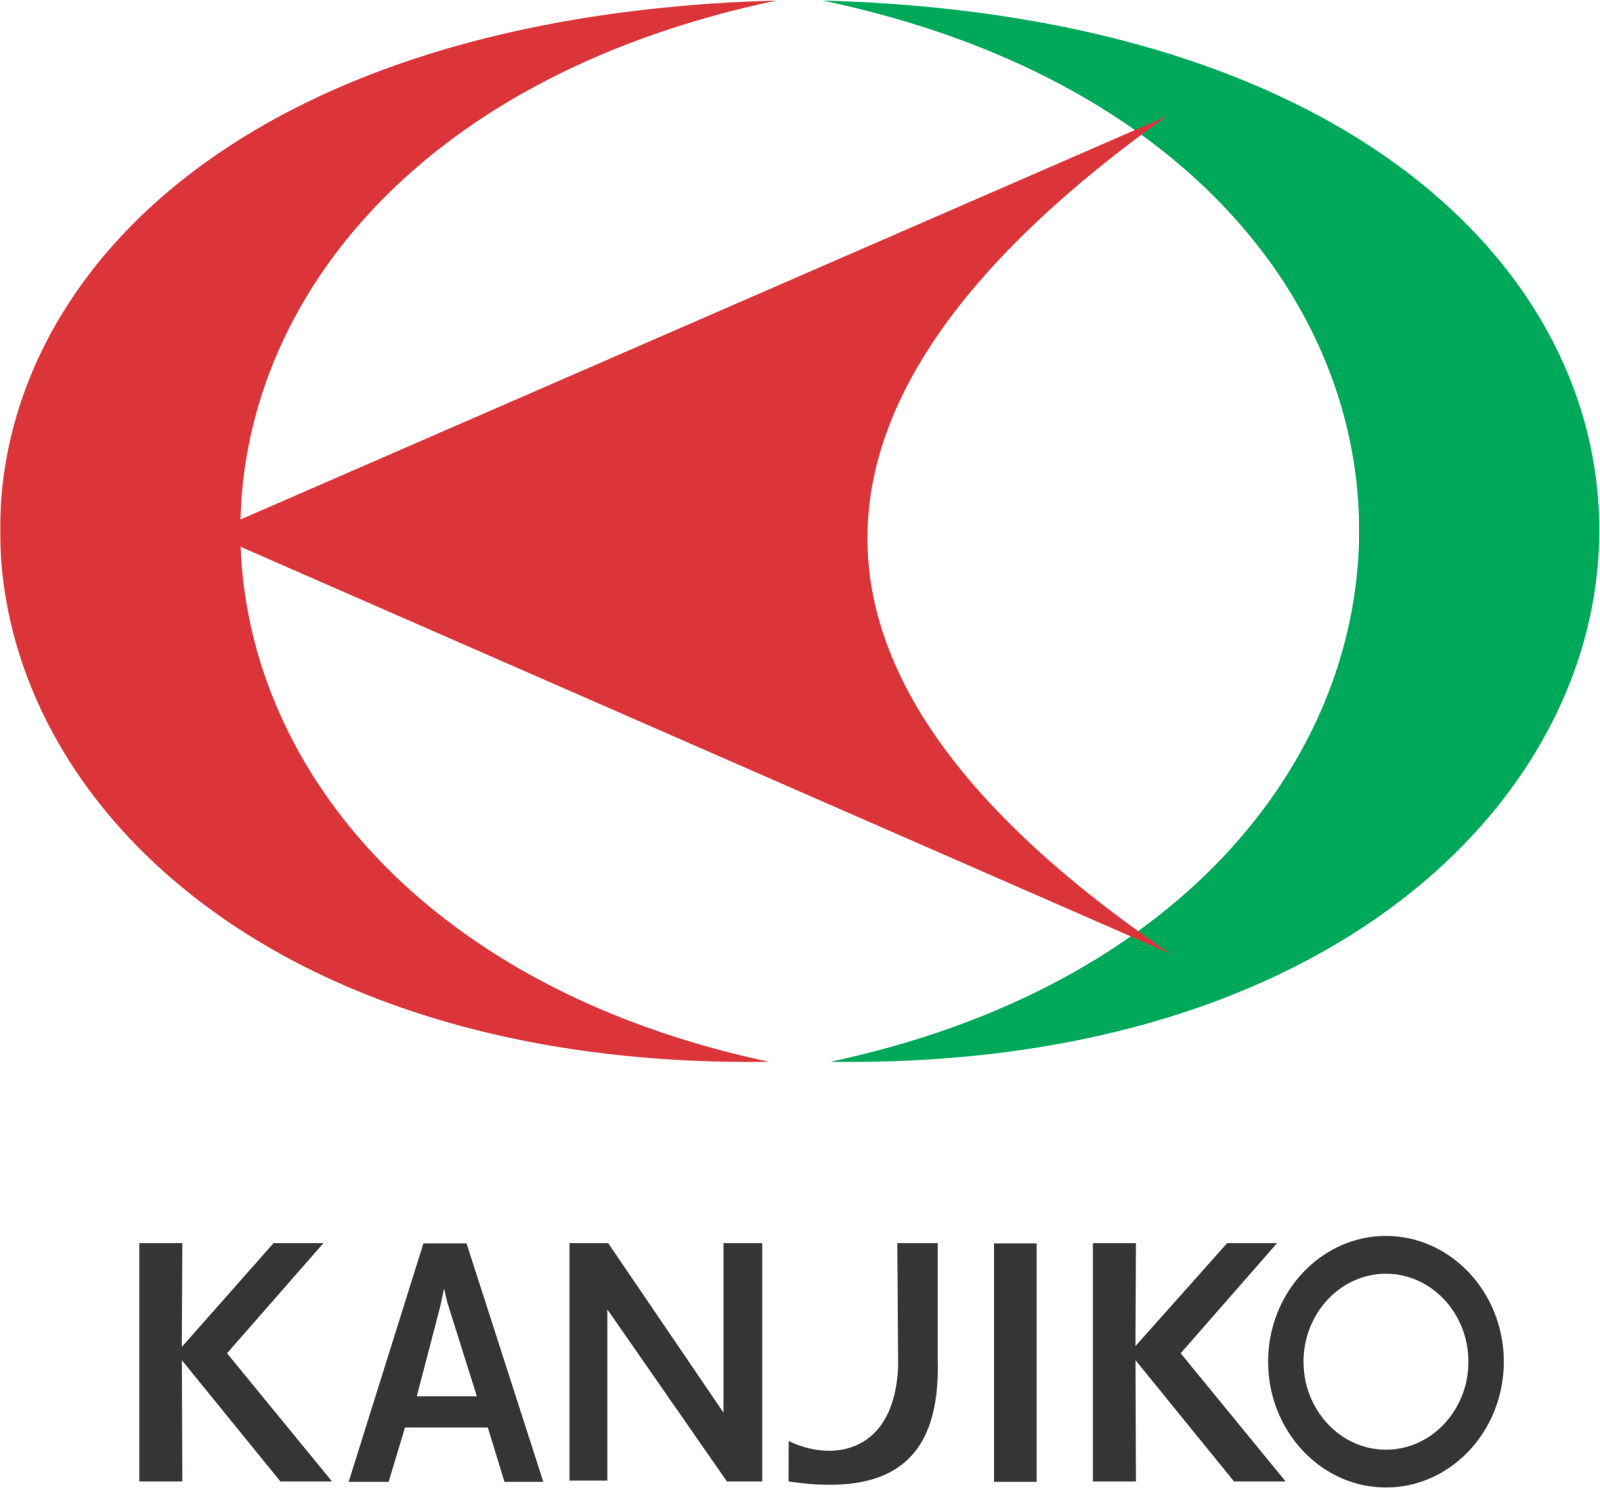 Kanjiko